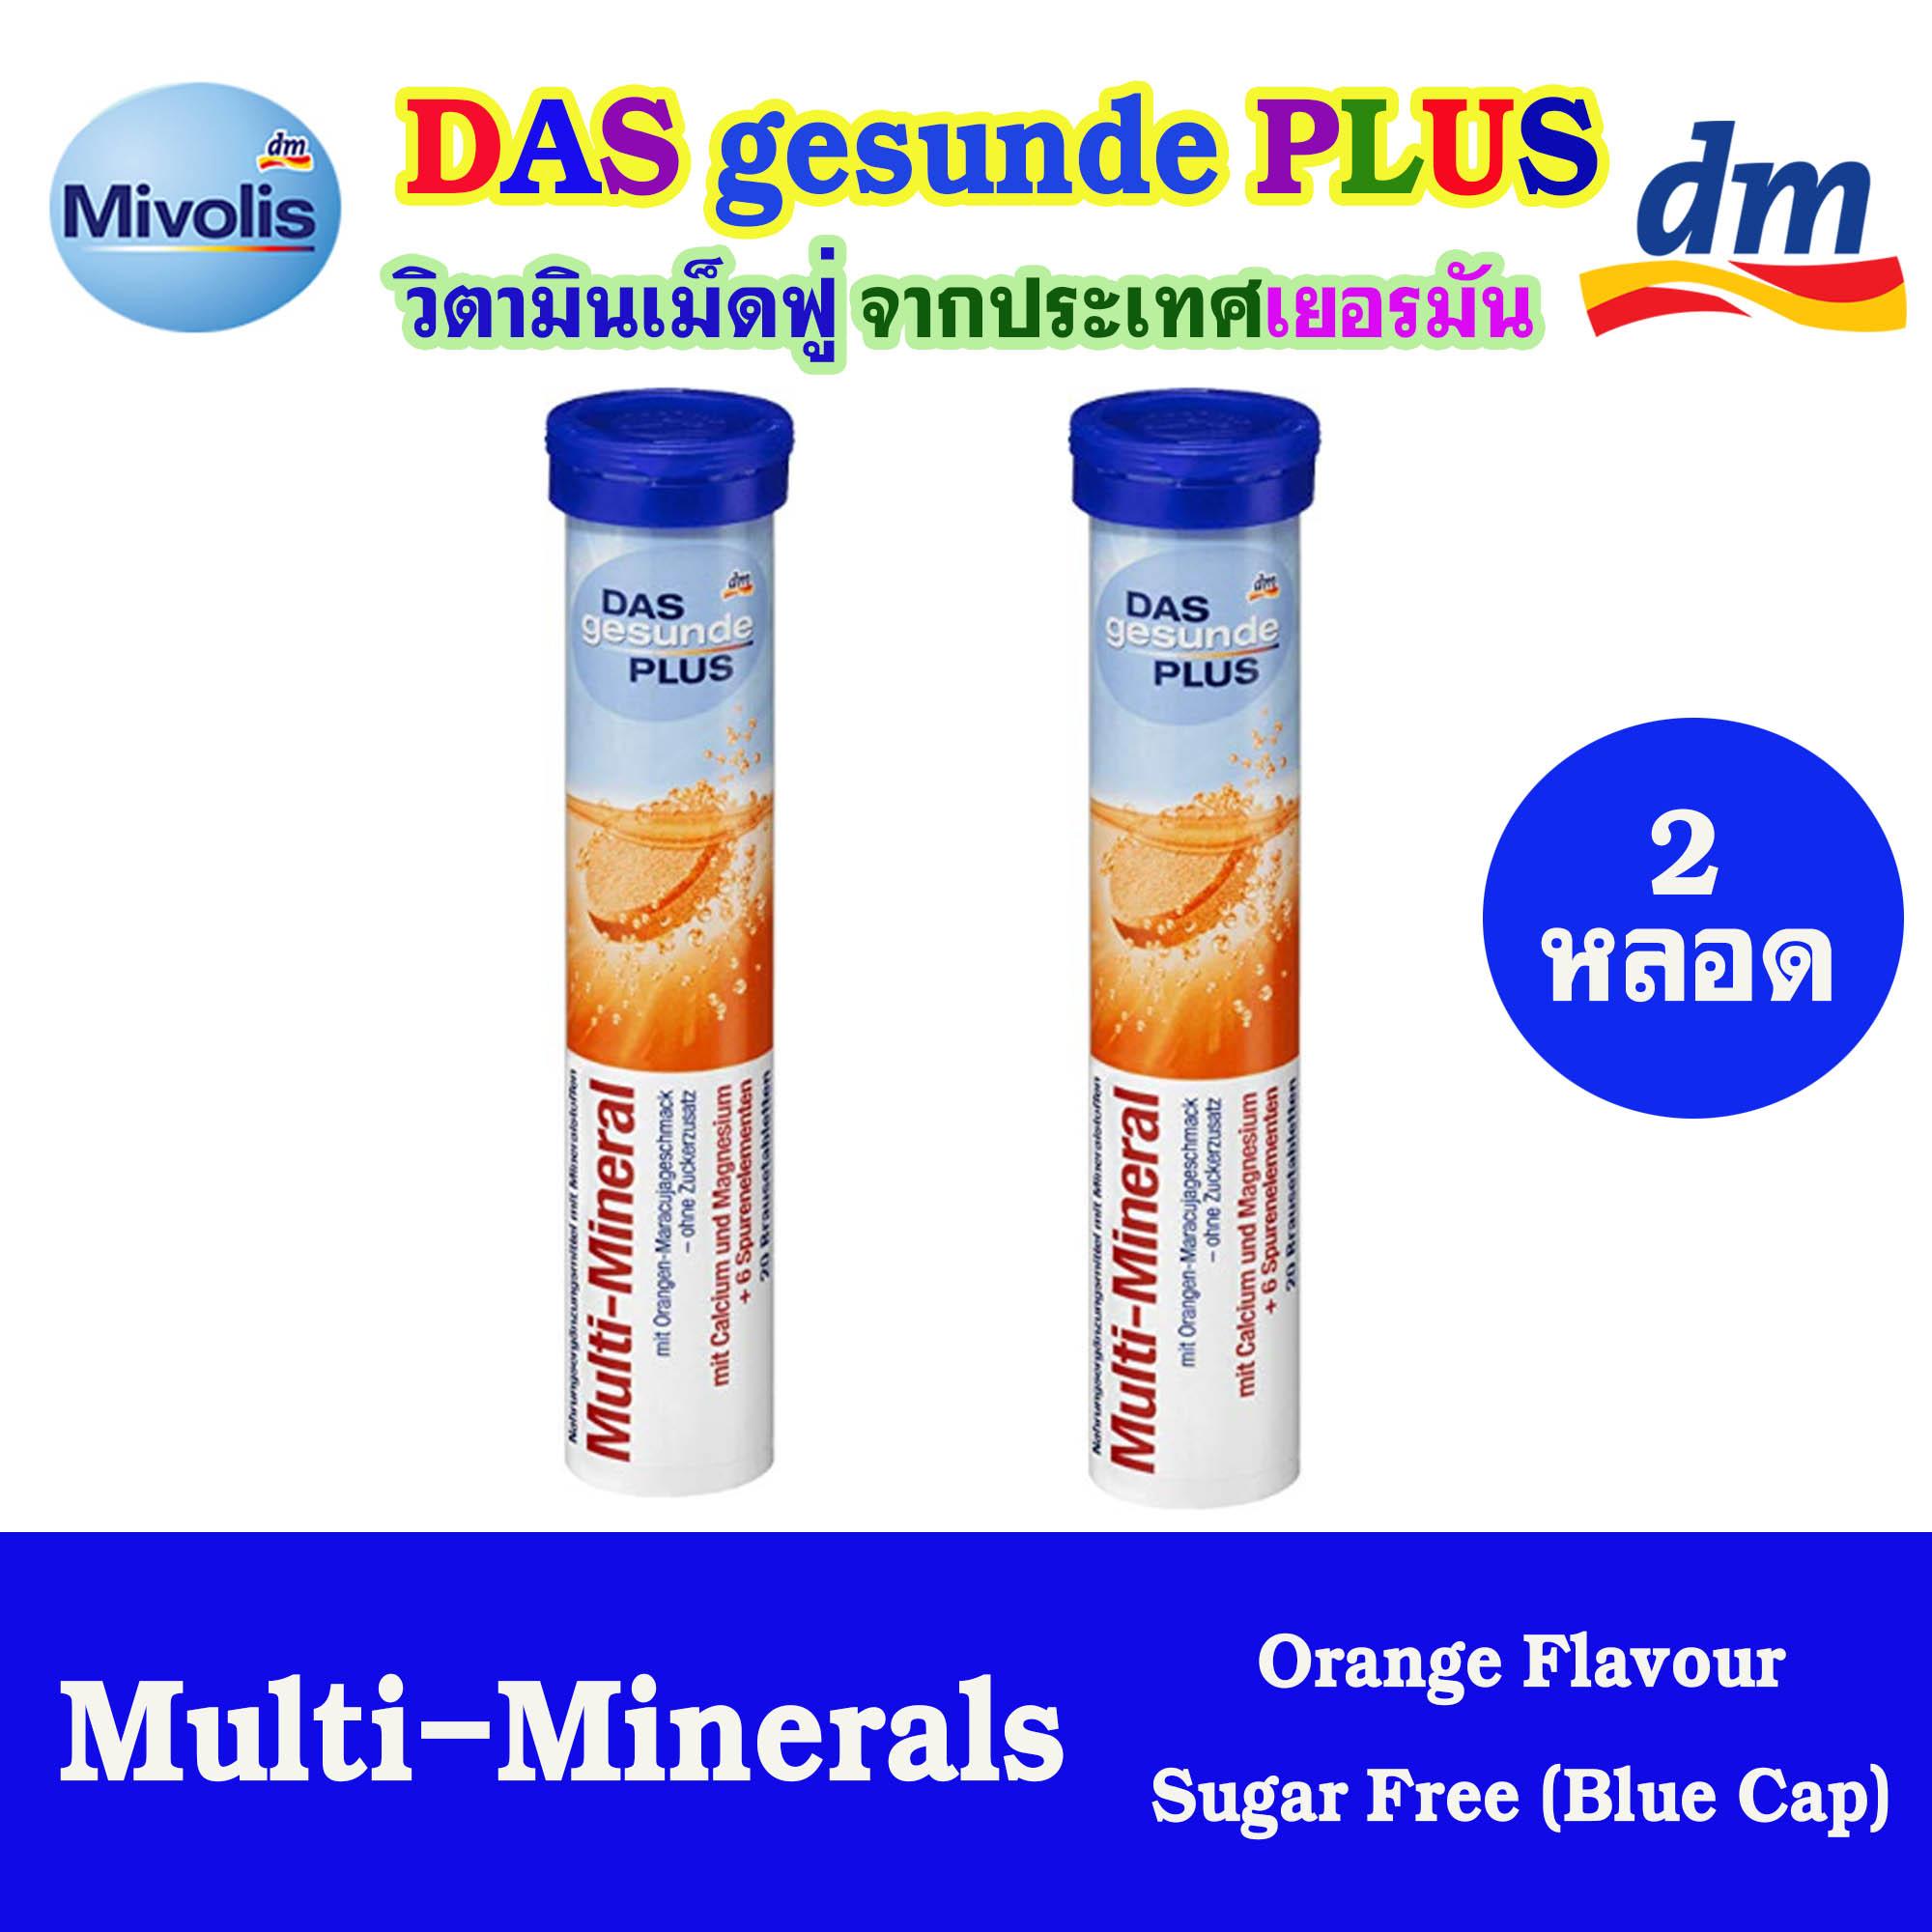 DAS gesunde PLUS วิตามินเม็ดฟู่ละลายน้ำ สีน้ำเงิน (Multi-Mineral) ชนิด 20 เม็ด จำนวน 2 หลอด